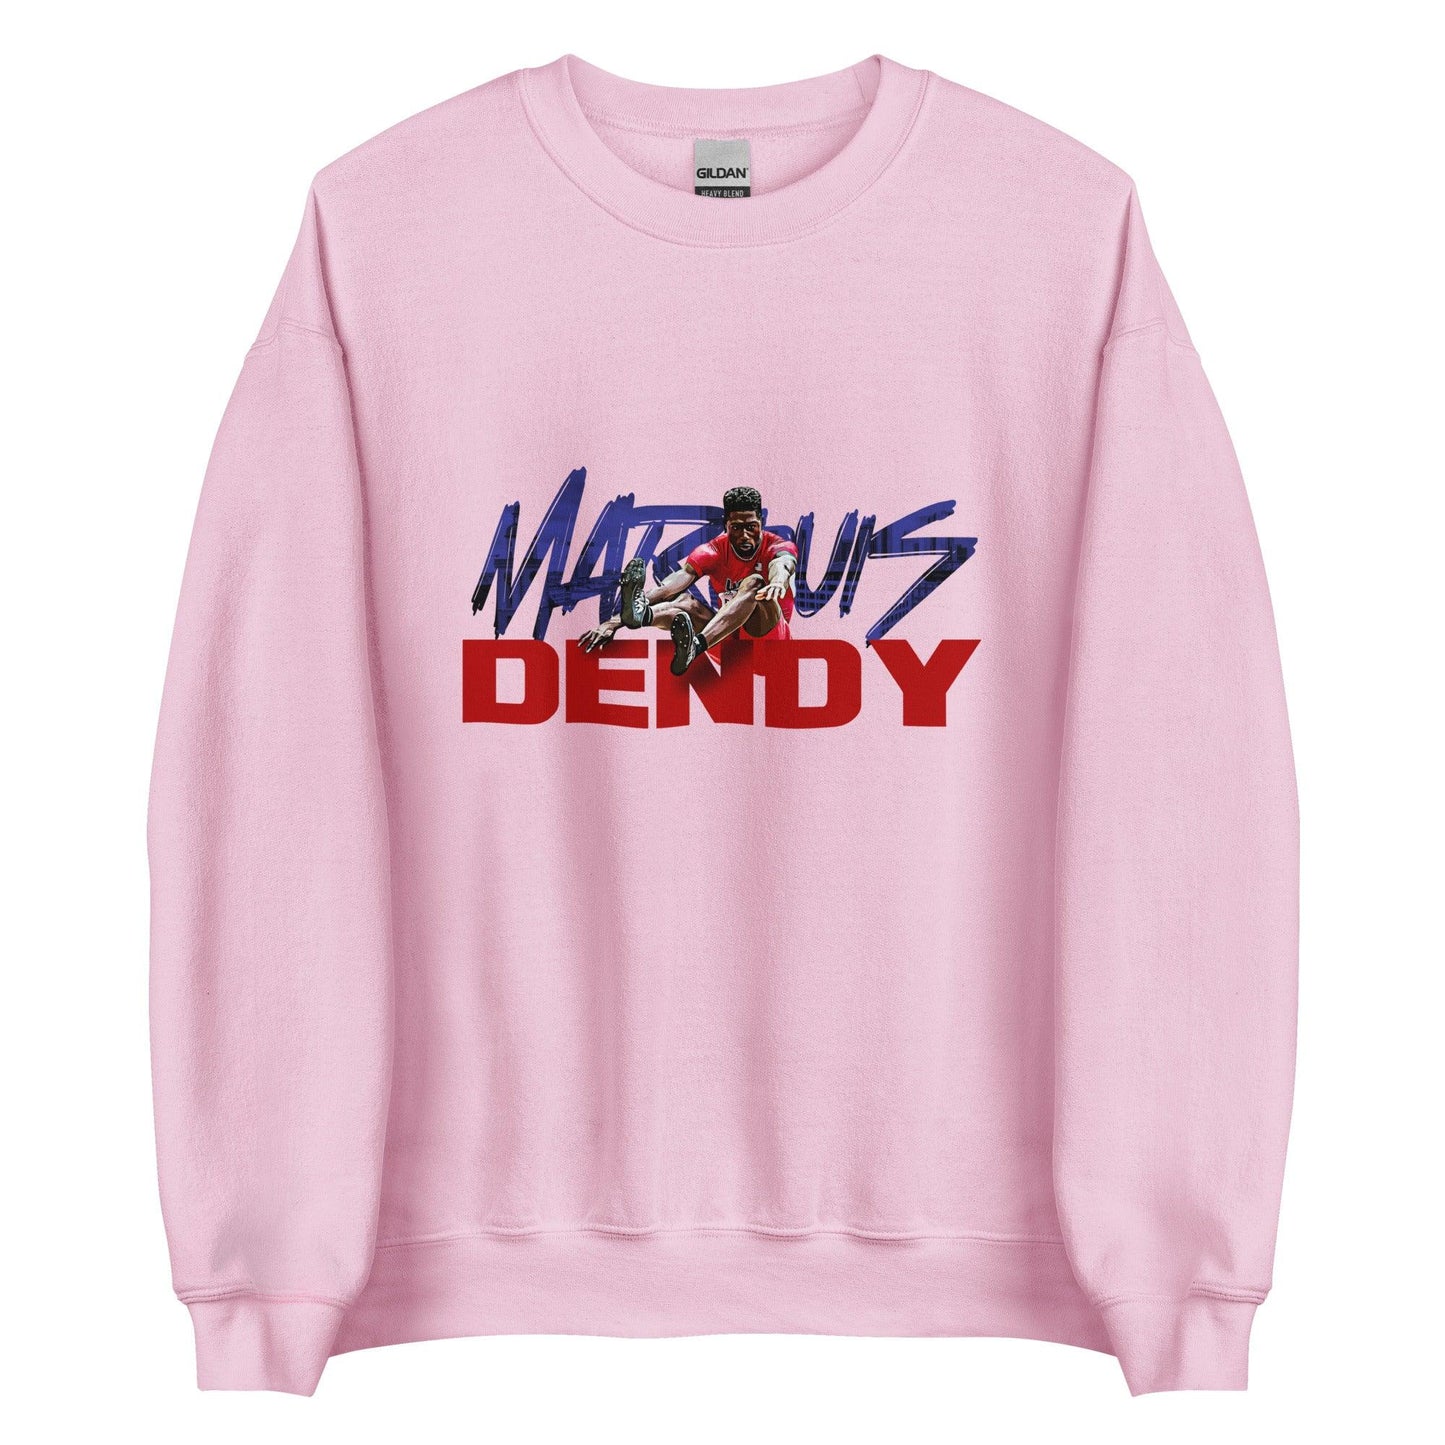 Marquis Dendy "Gameday" Sweatshirt - Fan Arch